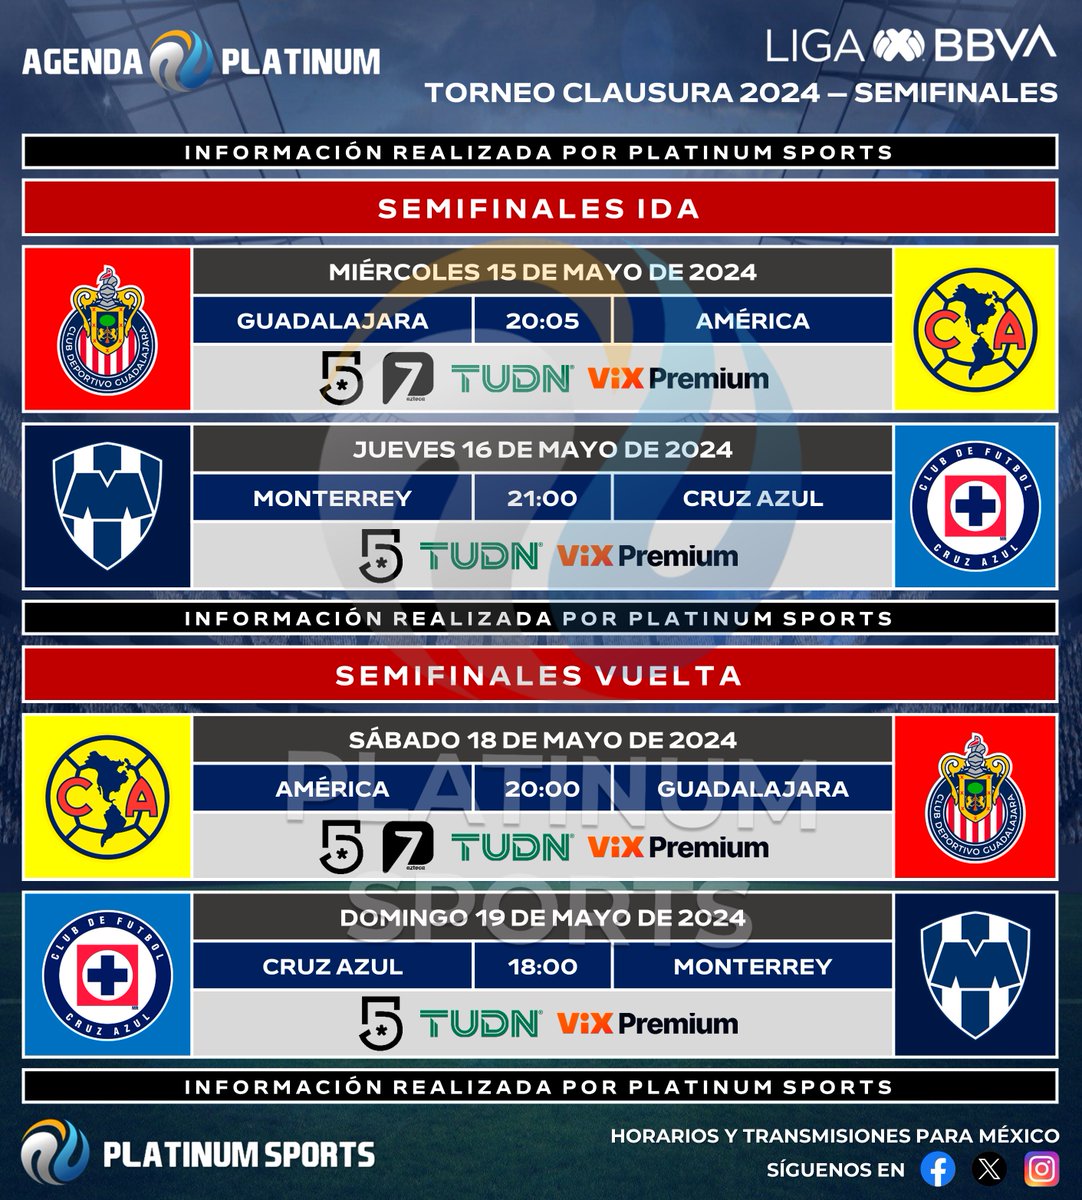 ⚽️ #AgendaPLATINUM 
🇲🇽 #LigaBBVAMX Clausura 2024 - Semifinales (ACTUALIZACIÓN)

➡️ Clásico Nacional por Azteca 7 y Canal 5.
⏰📺 Horarios y transmisiones para México.
⚠️ Sujeto a cambios. 

#Clausura2024 - #Semifinales